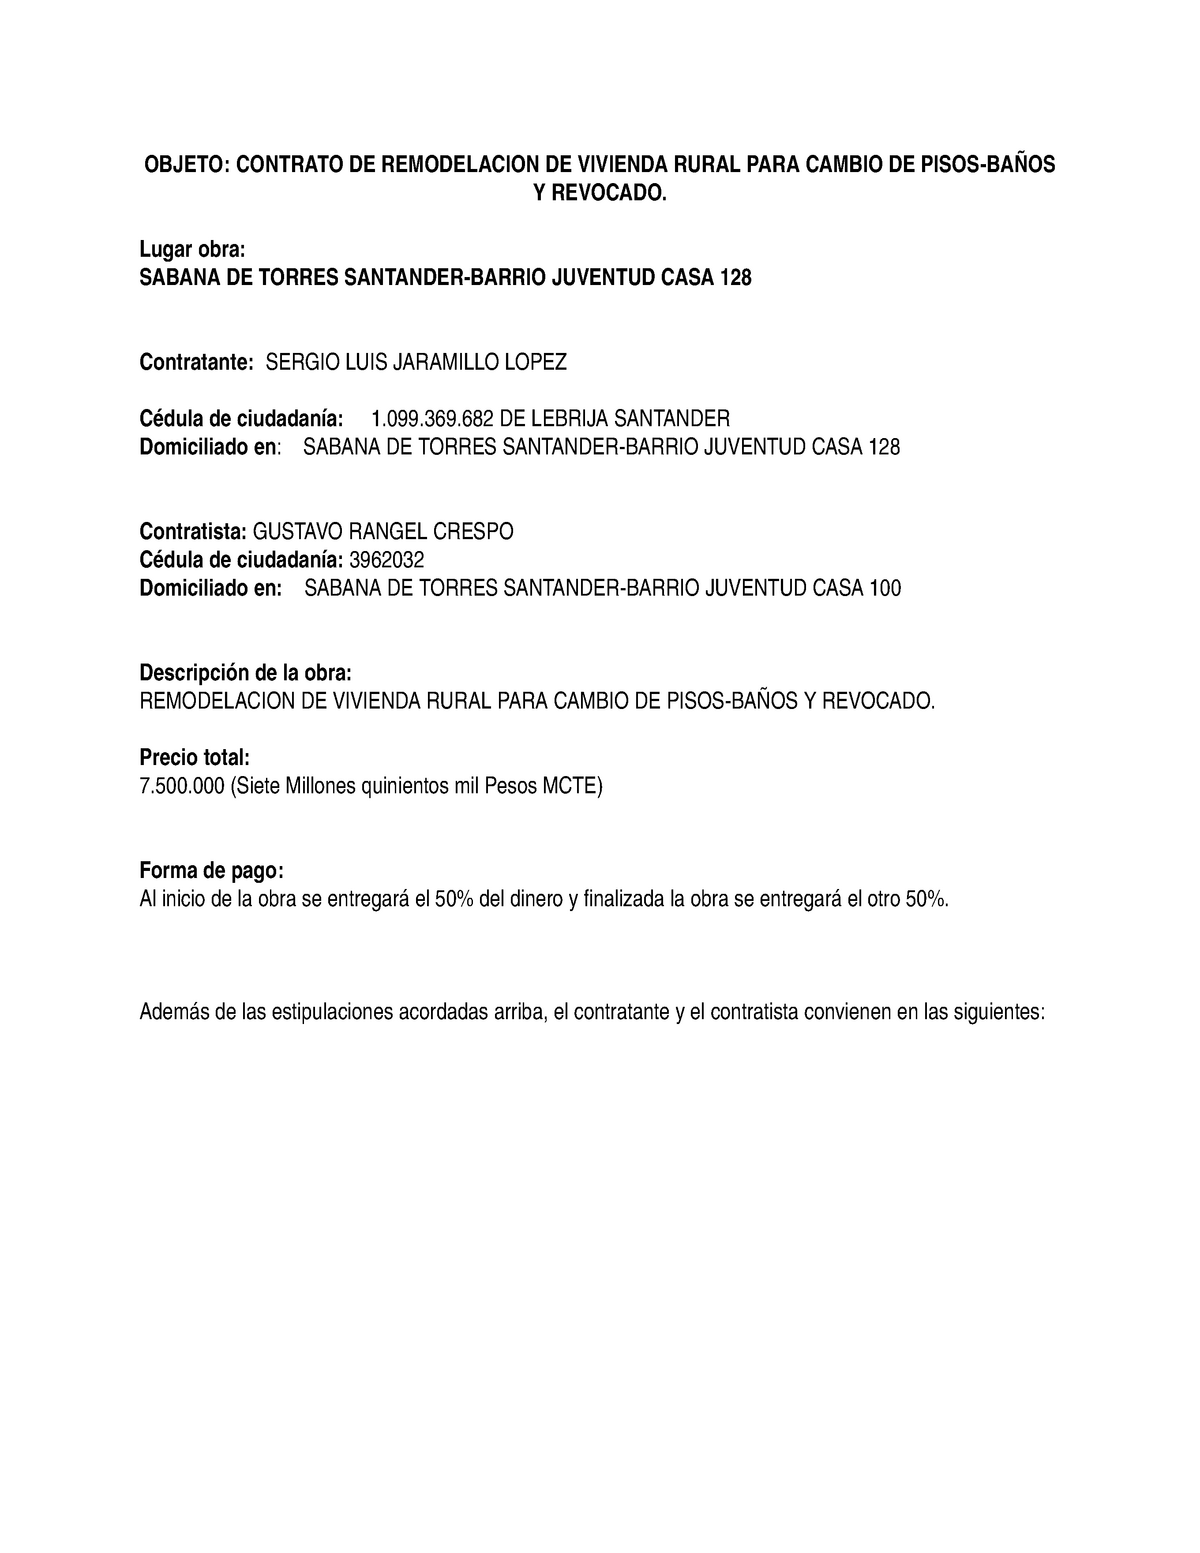 Contrato de remodelacion - OBJETO: CONTRATO DE REMODELACION DE VIVIENDA  RURAL PARA CAMBIO DE - Studocu